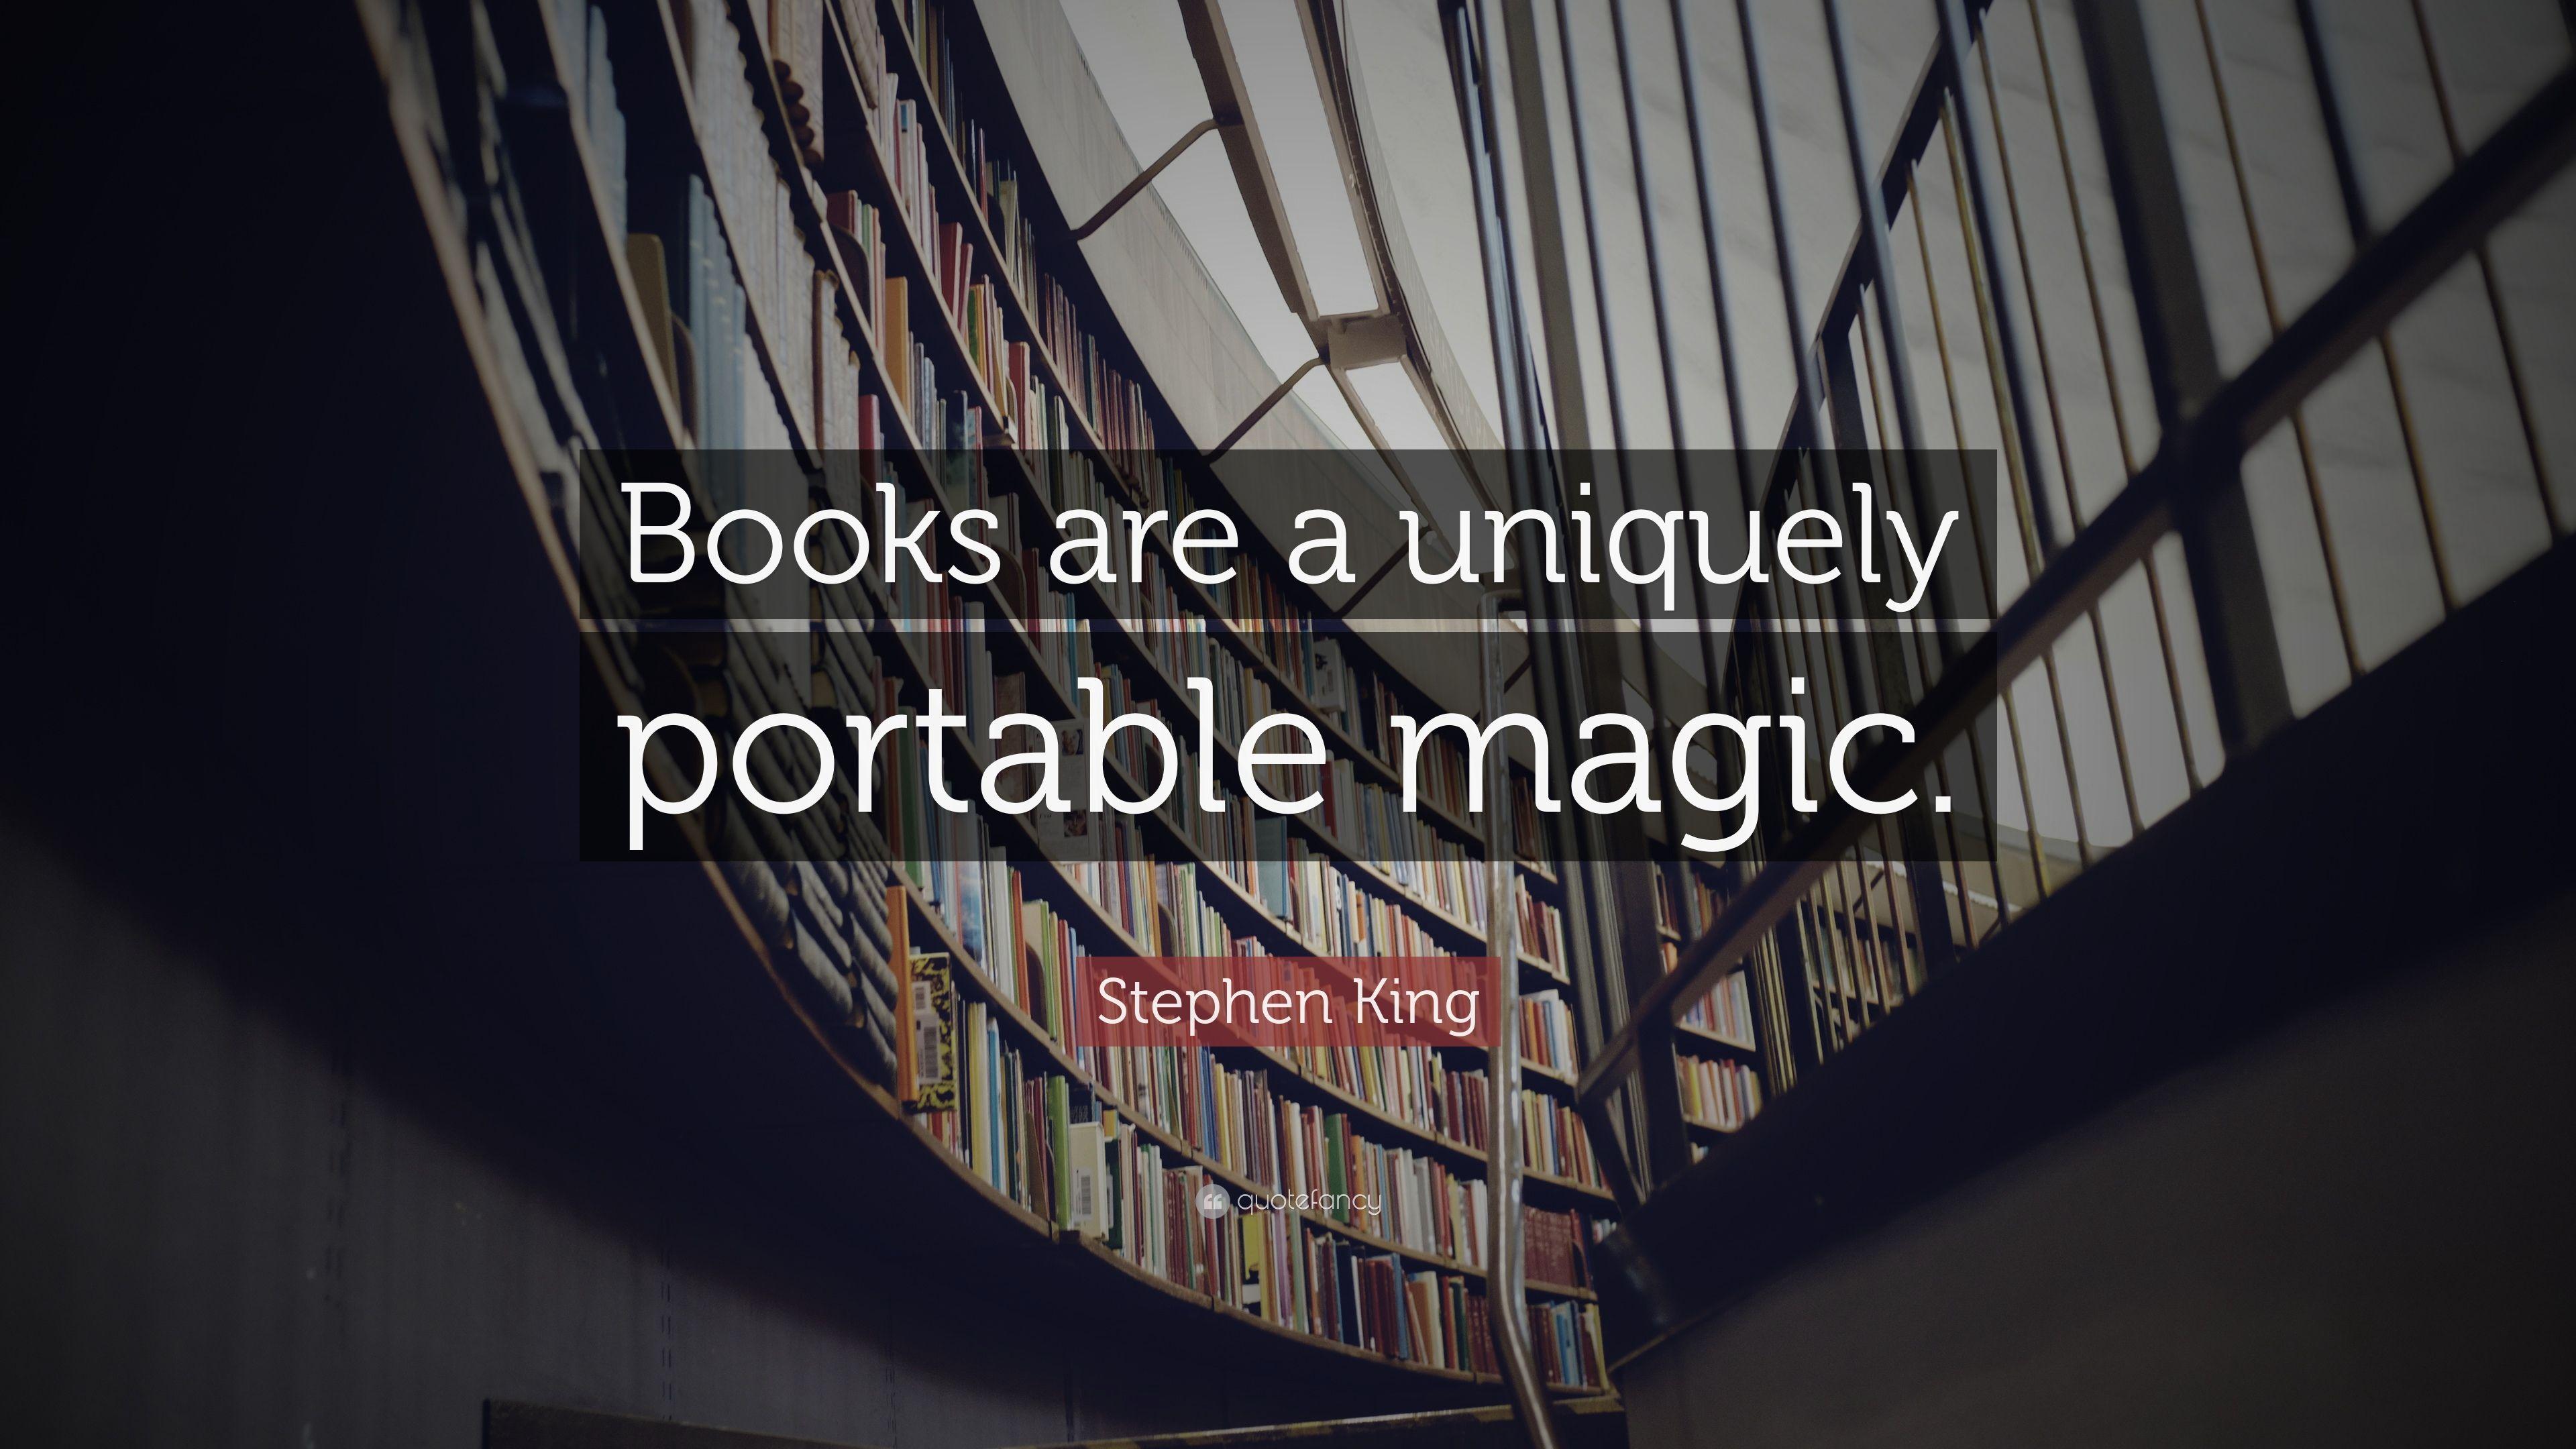 Stephen King Quote: “Books are a uniquely portable magic.” 12